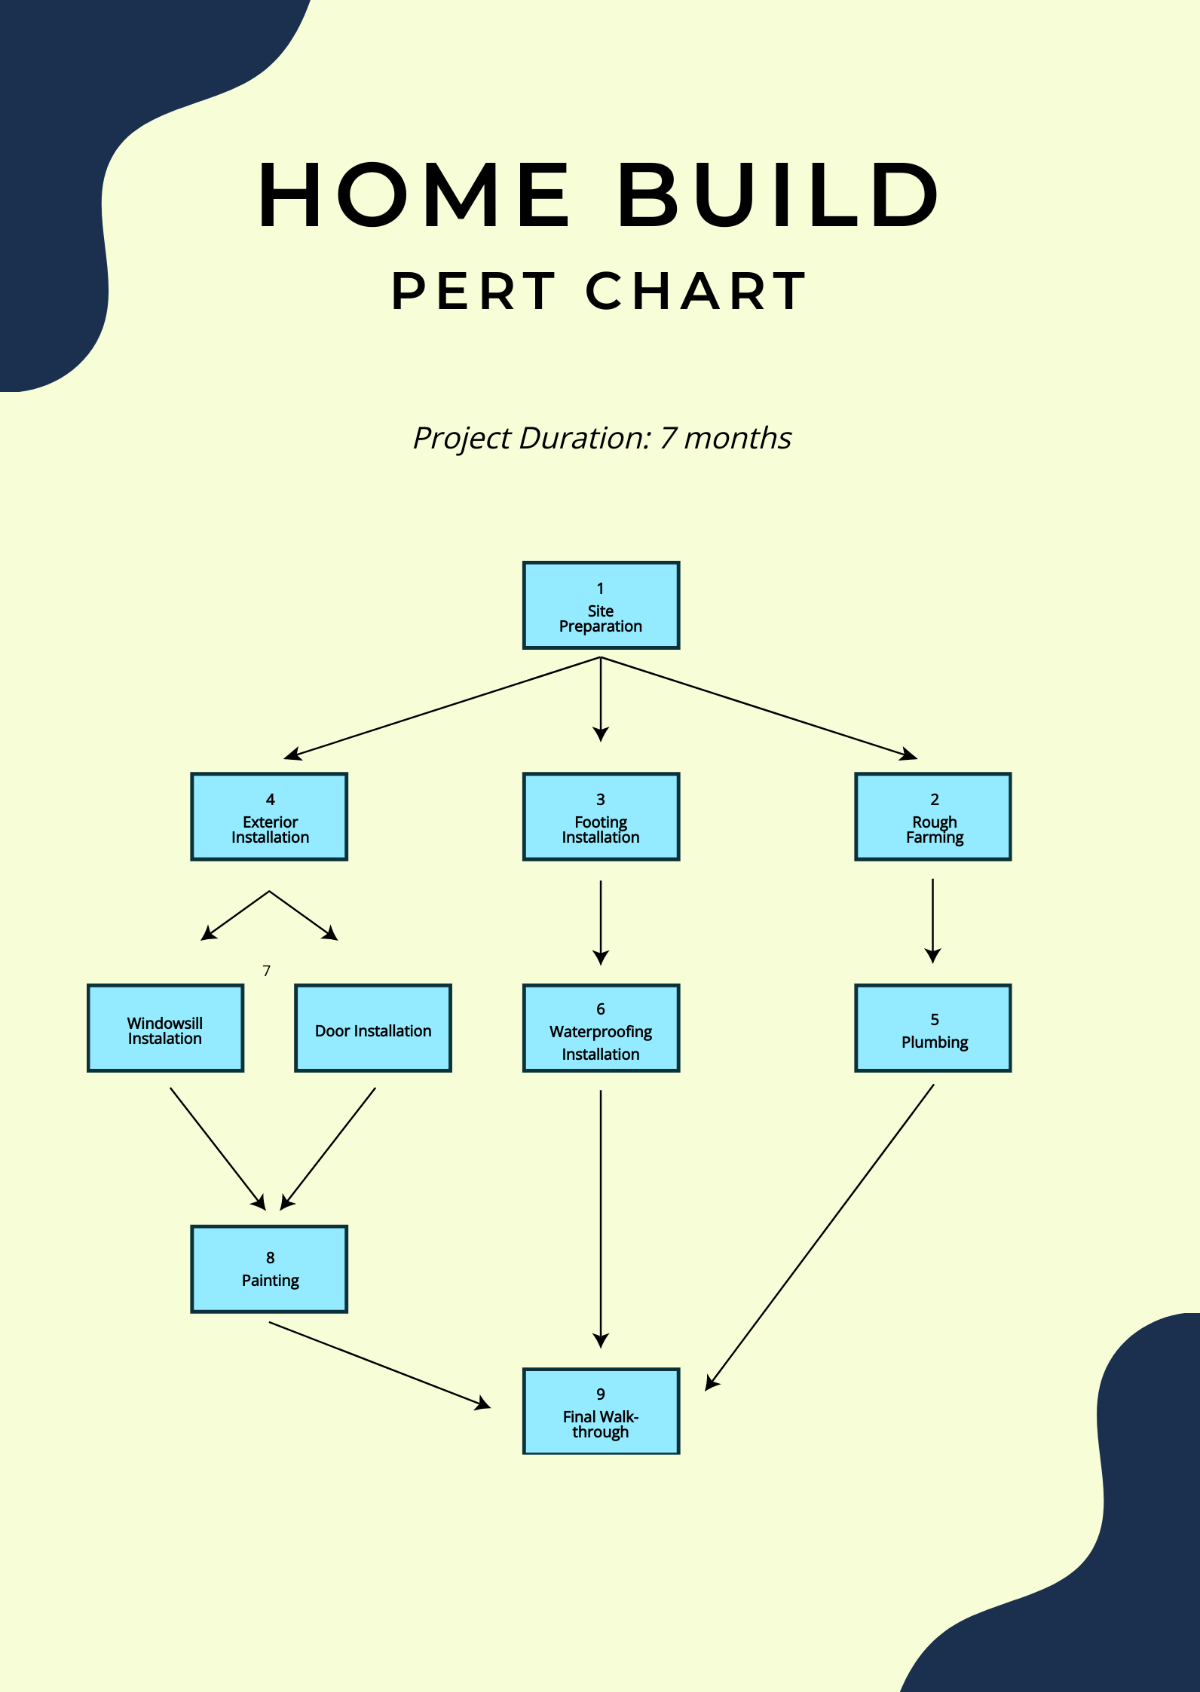 Home Build PERT Chart Template